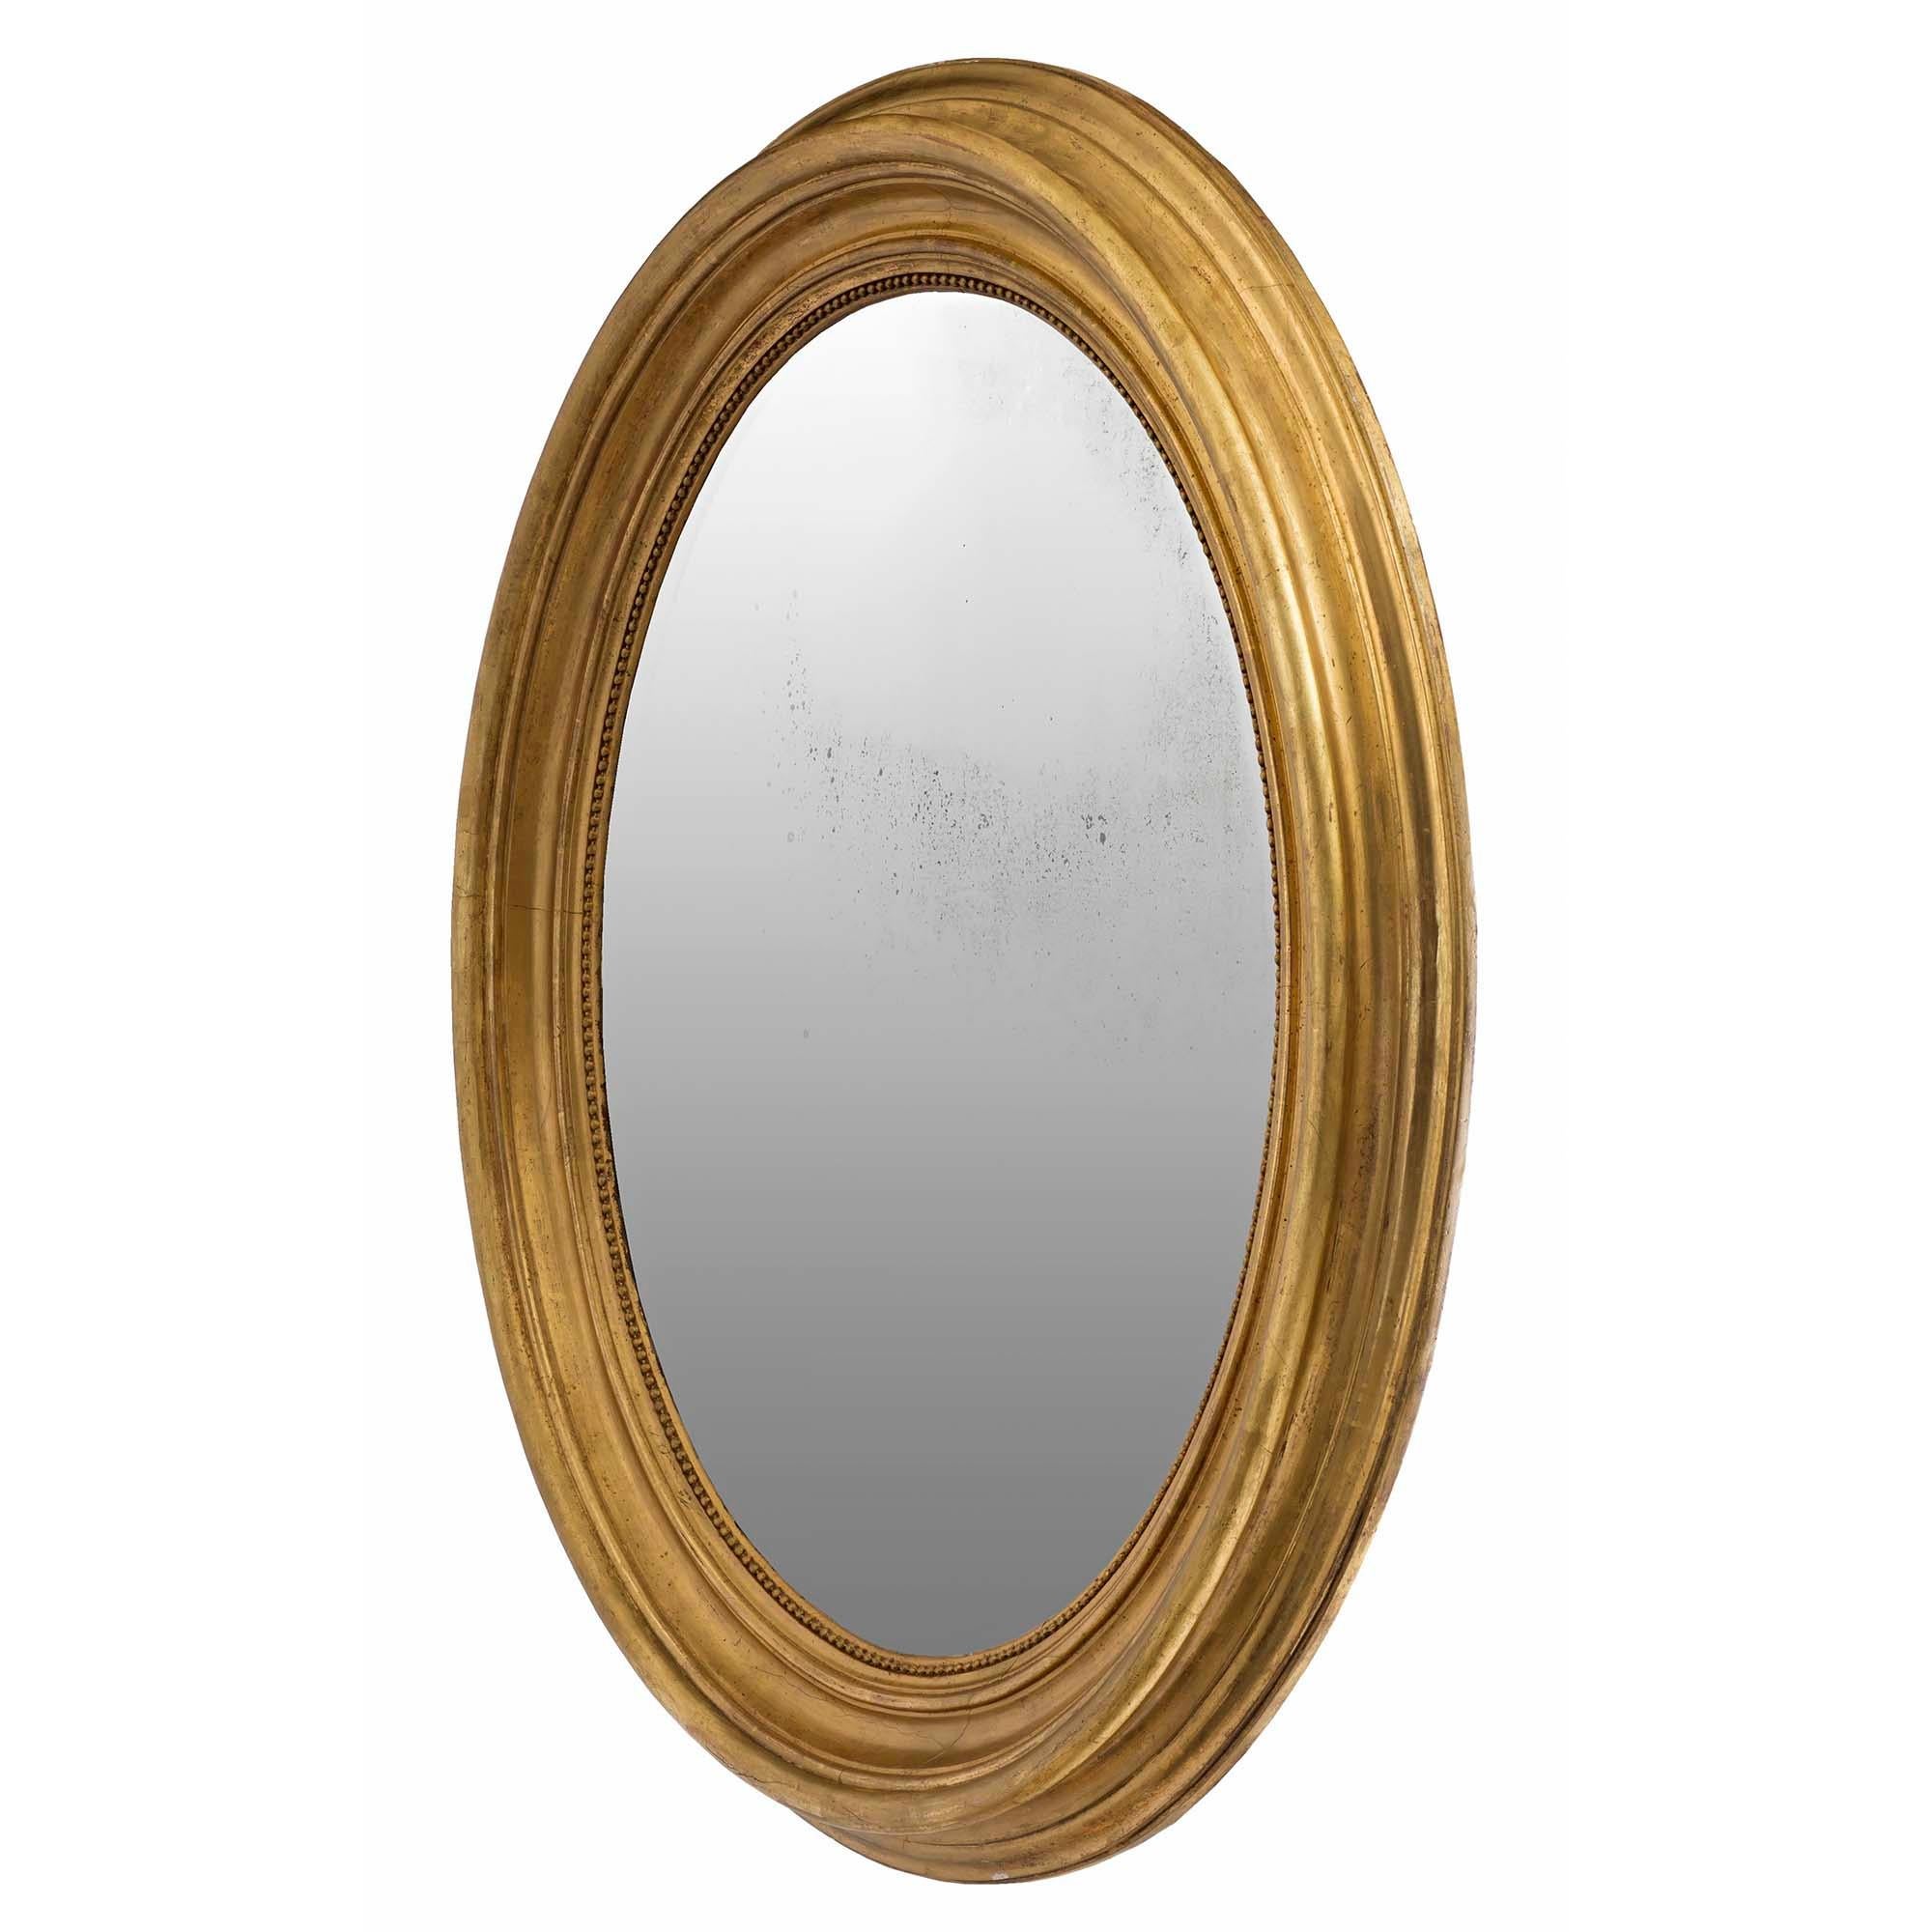 Très beau miroir ovale en bois doré de style Louis XVI du XIXe siècle. La plaque de miroir originale est insérée dans un cadre en bois doré satiné et bruni. L'impressionnant cadre moucheté présente une bordure intérieure perlée. Le miroir peut être